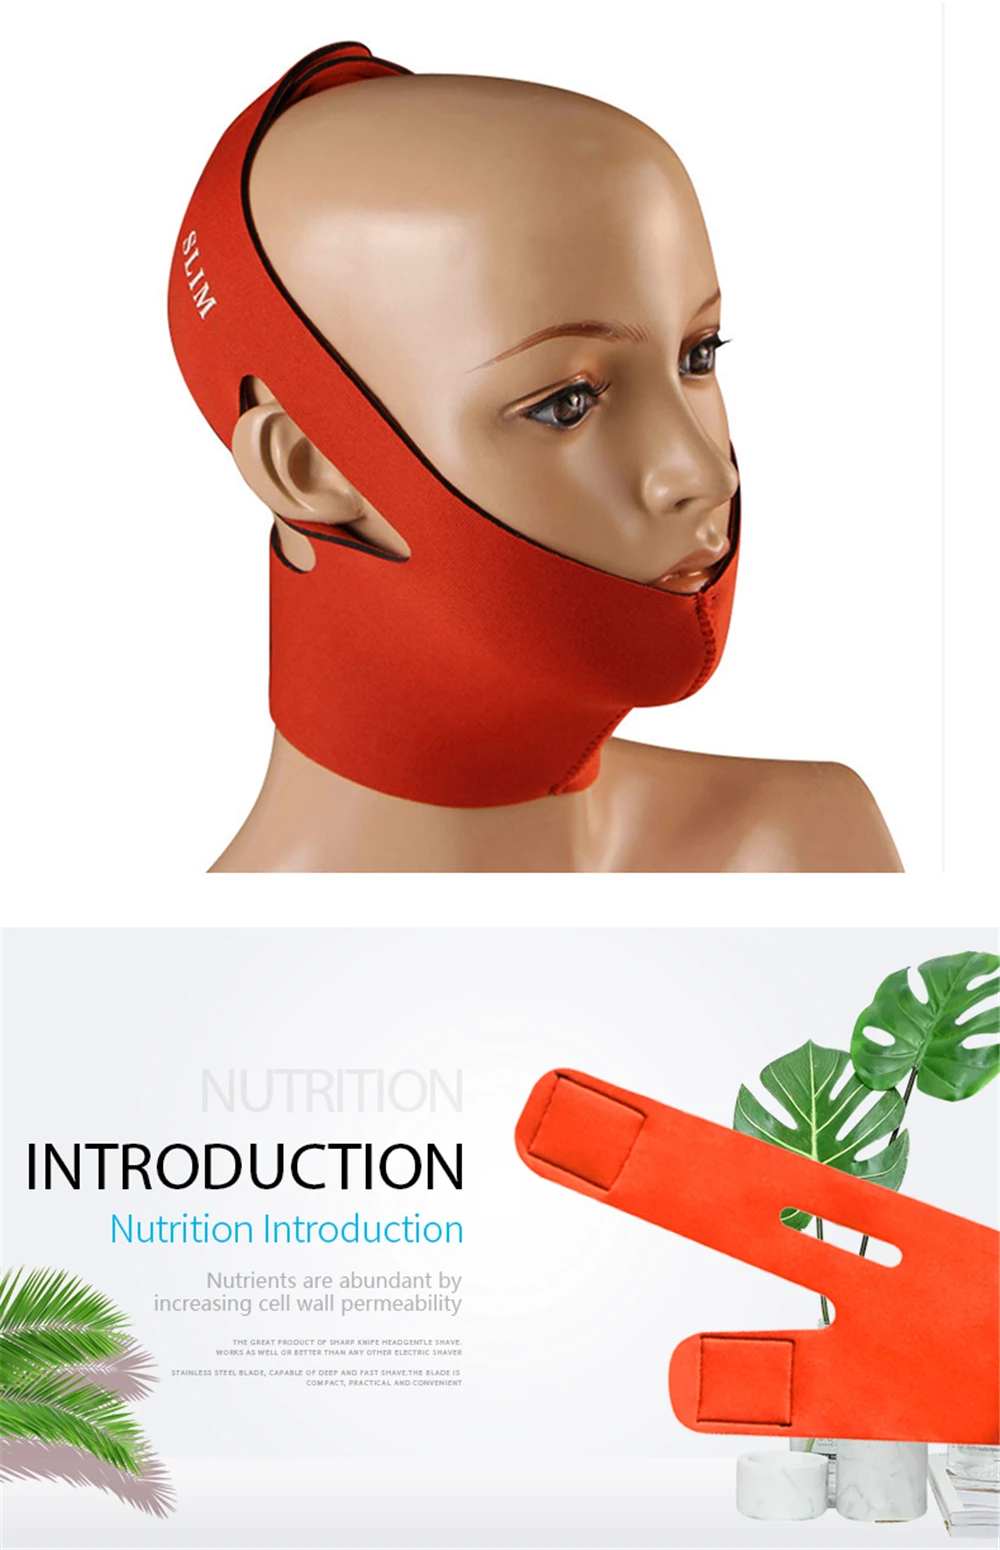 Аппарат для лифтинга для лица, пластмассовая ткань для похудения, косметическая повязка, v-формирующий массажный пояс для лица